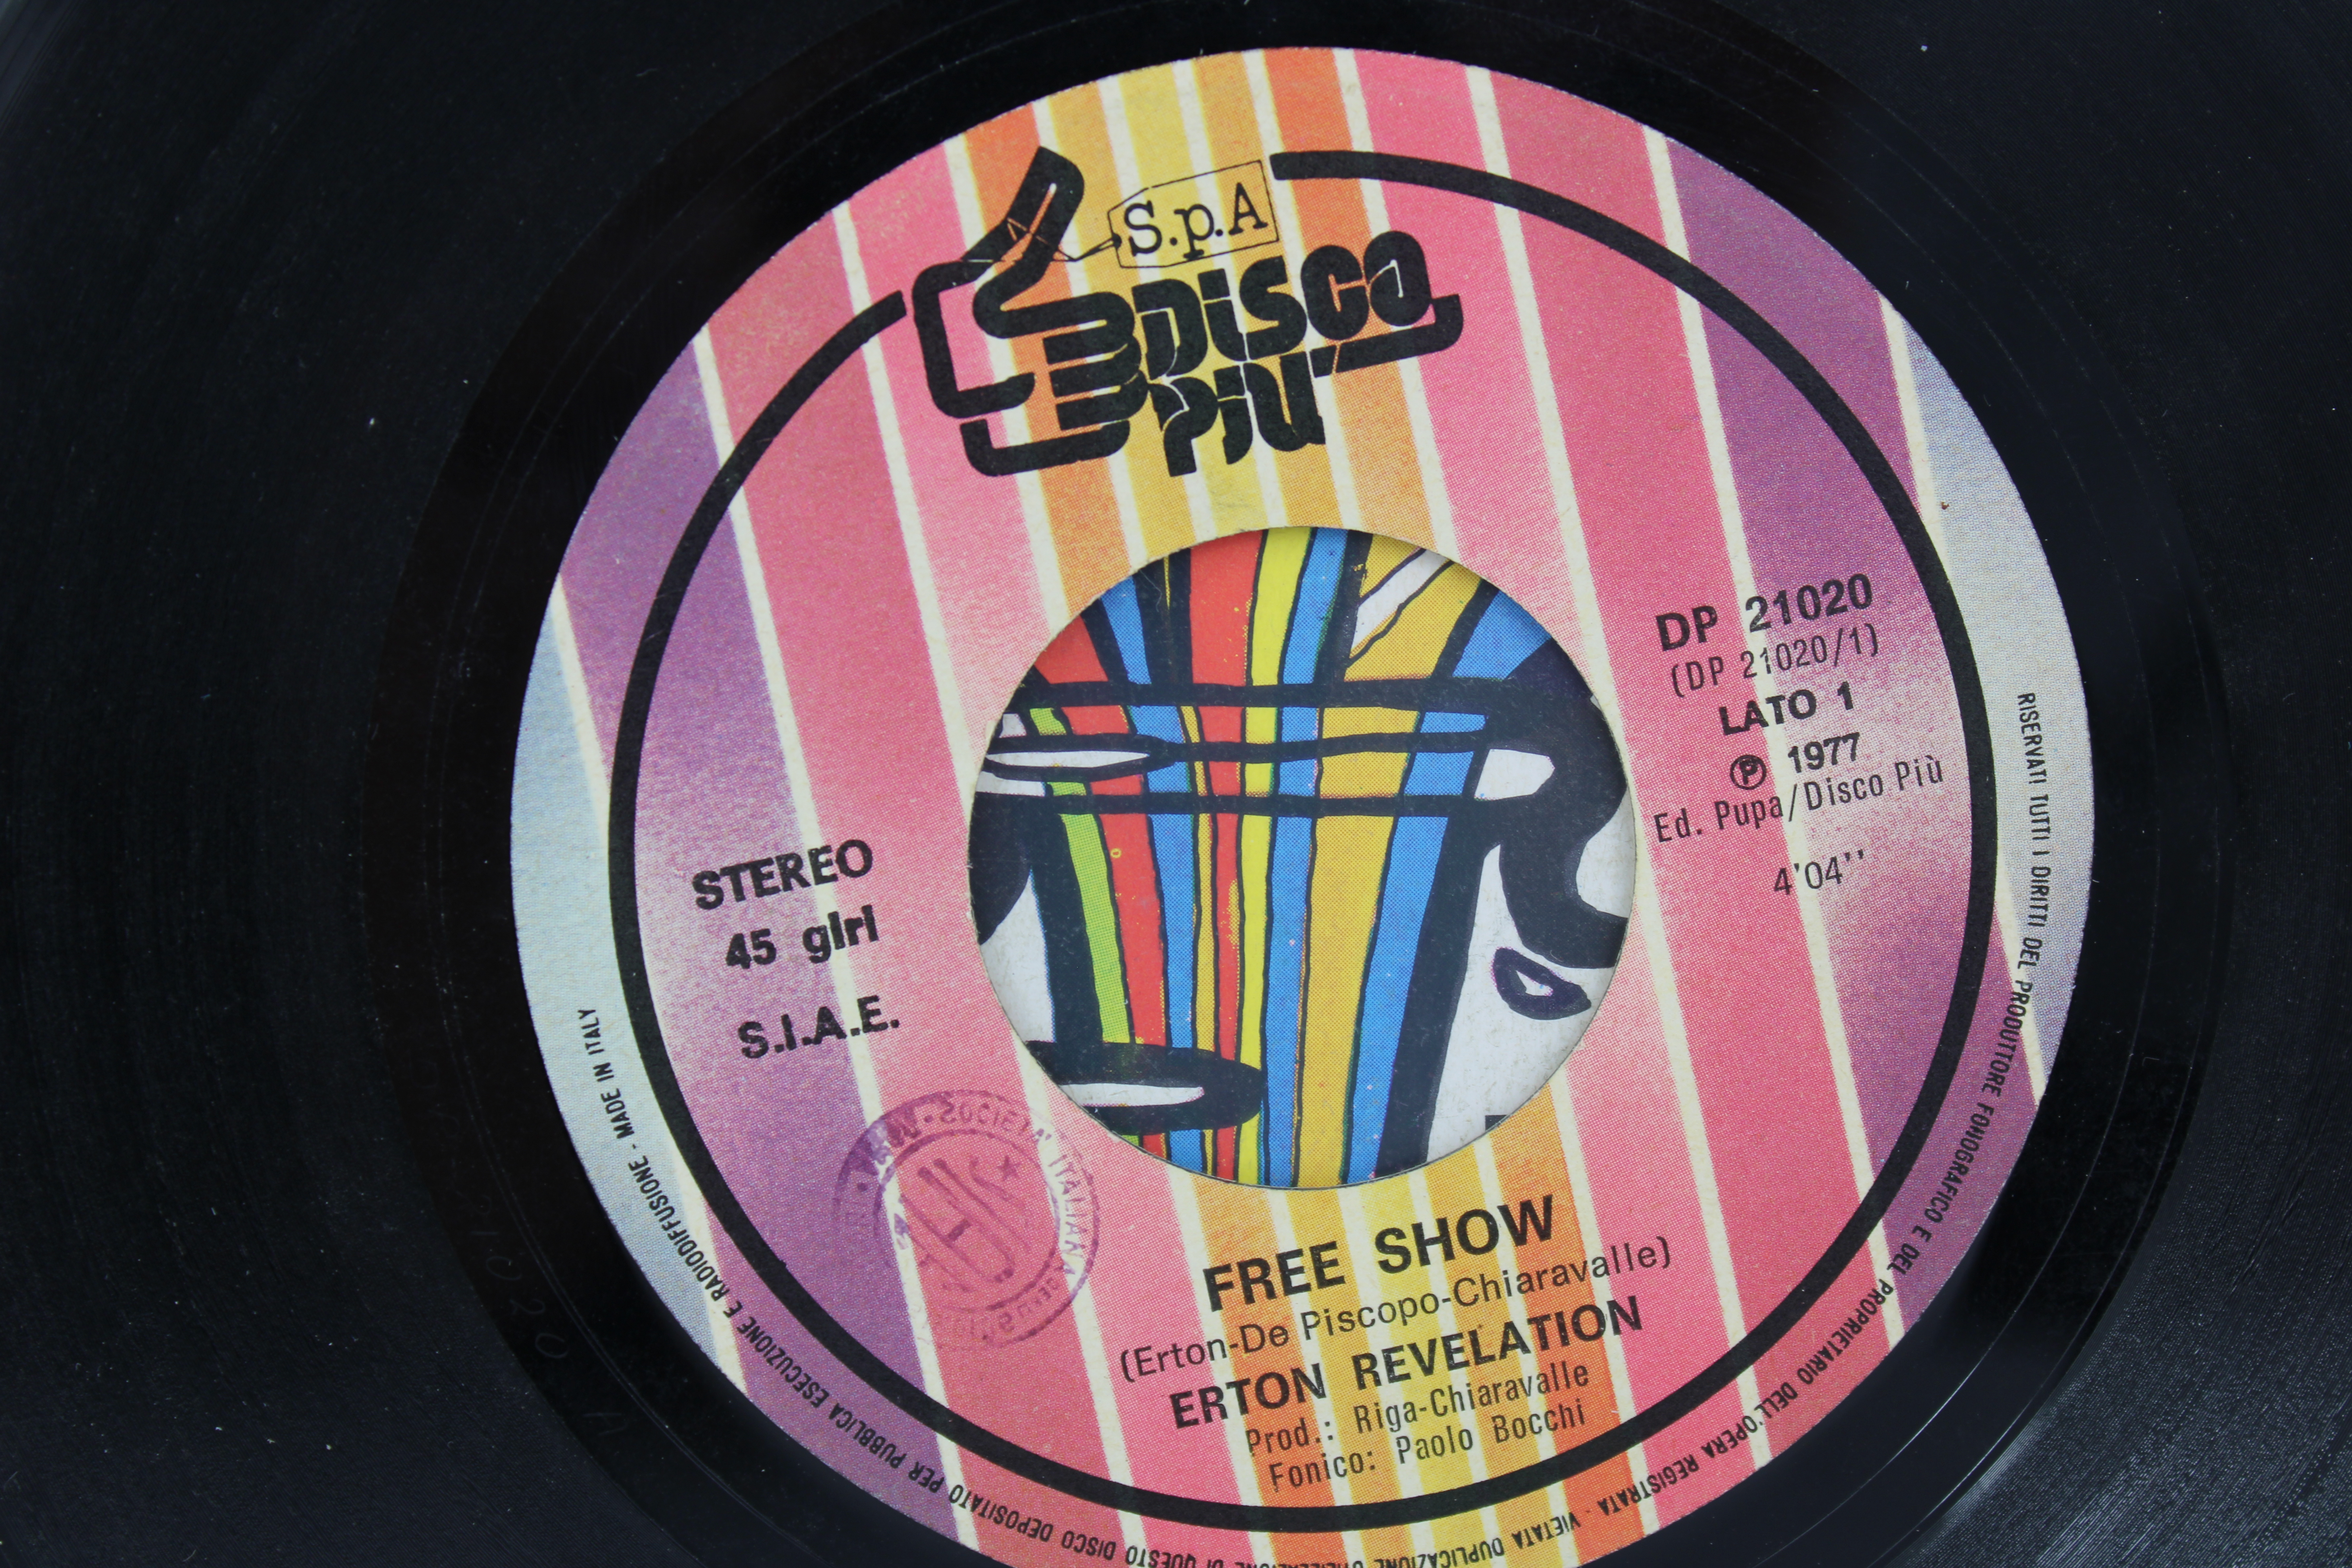 Erton Revelation Free Show Fire Dance Disco 45 Giri Vinyl Vinile 7